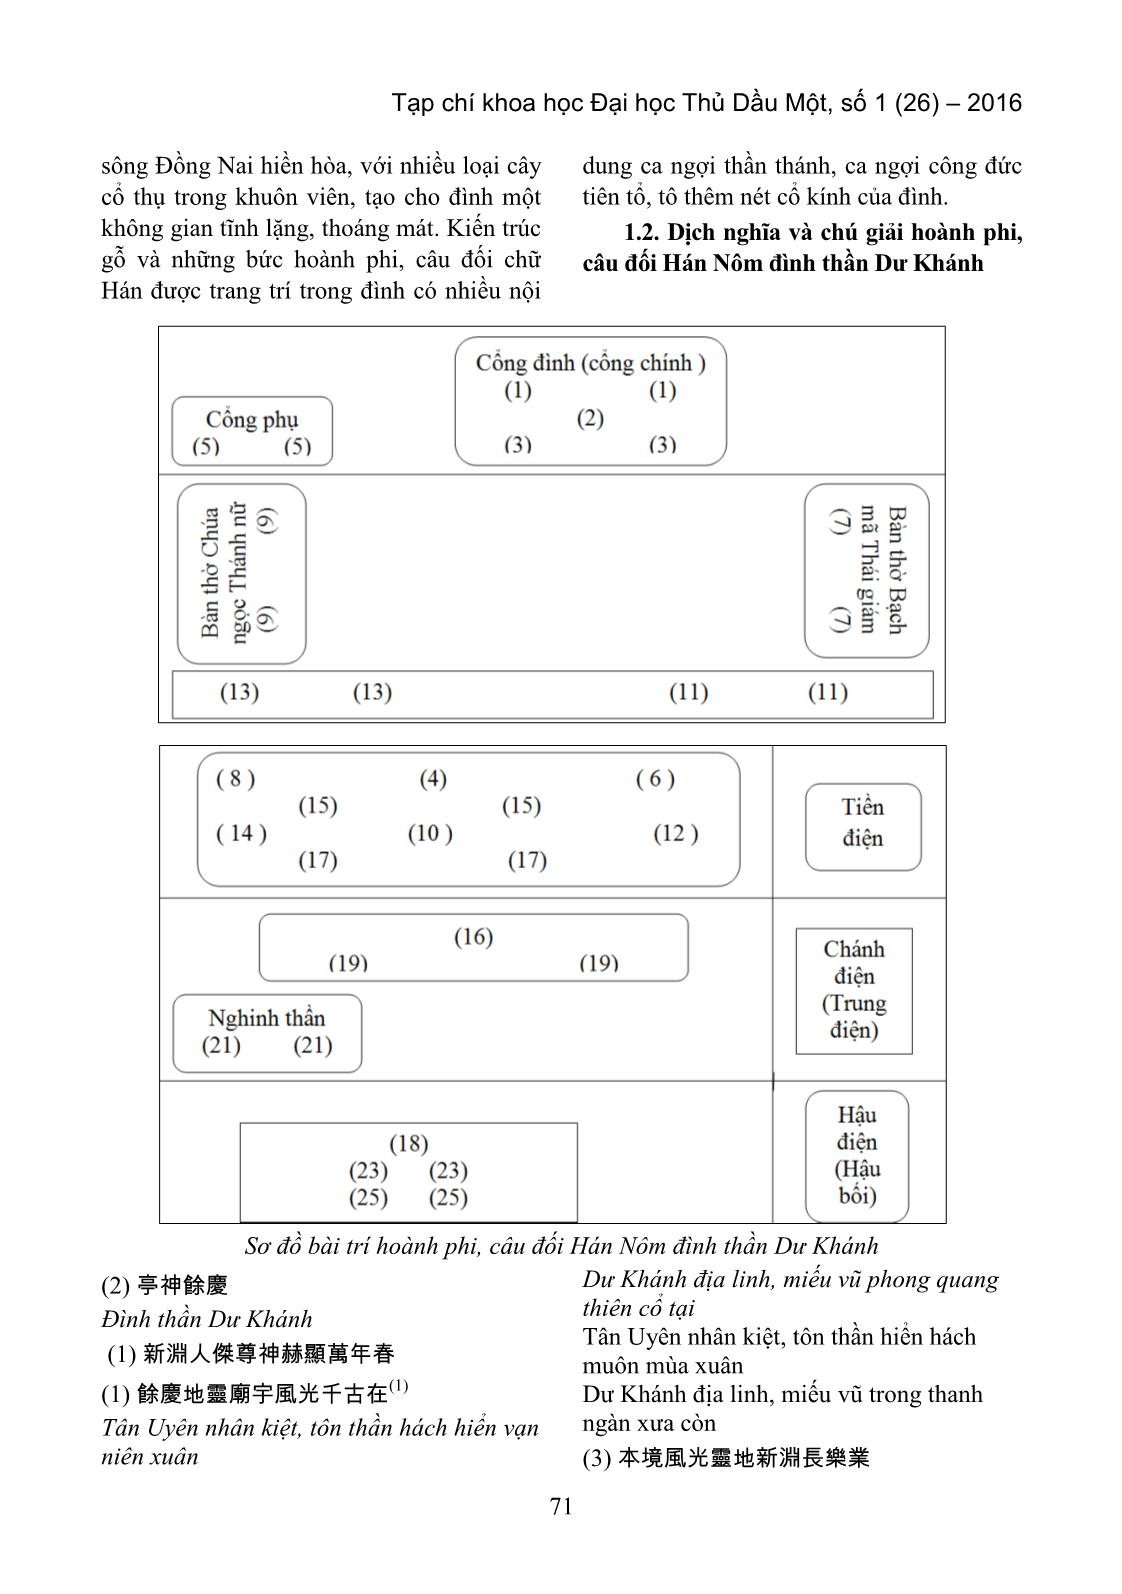 Tìm hiểu hoành phi, câu đối Hán Nôm đình thần dư khánh (Tân Uyên, Bình Dương) trang 2